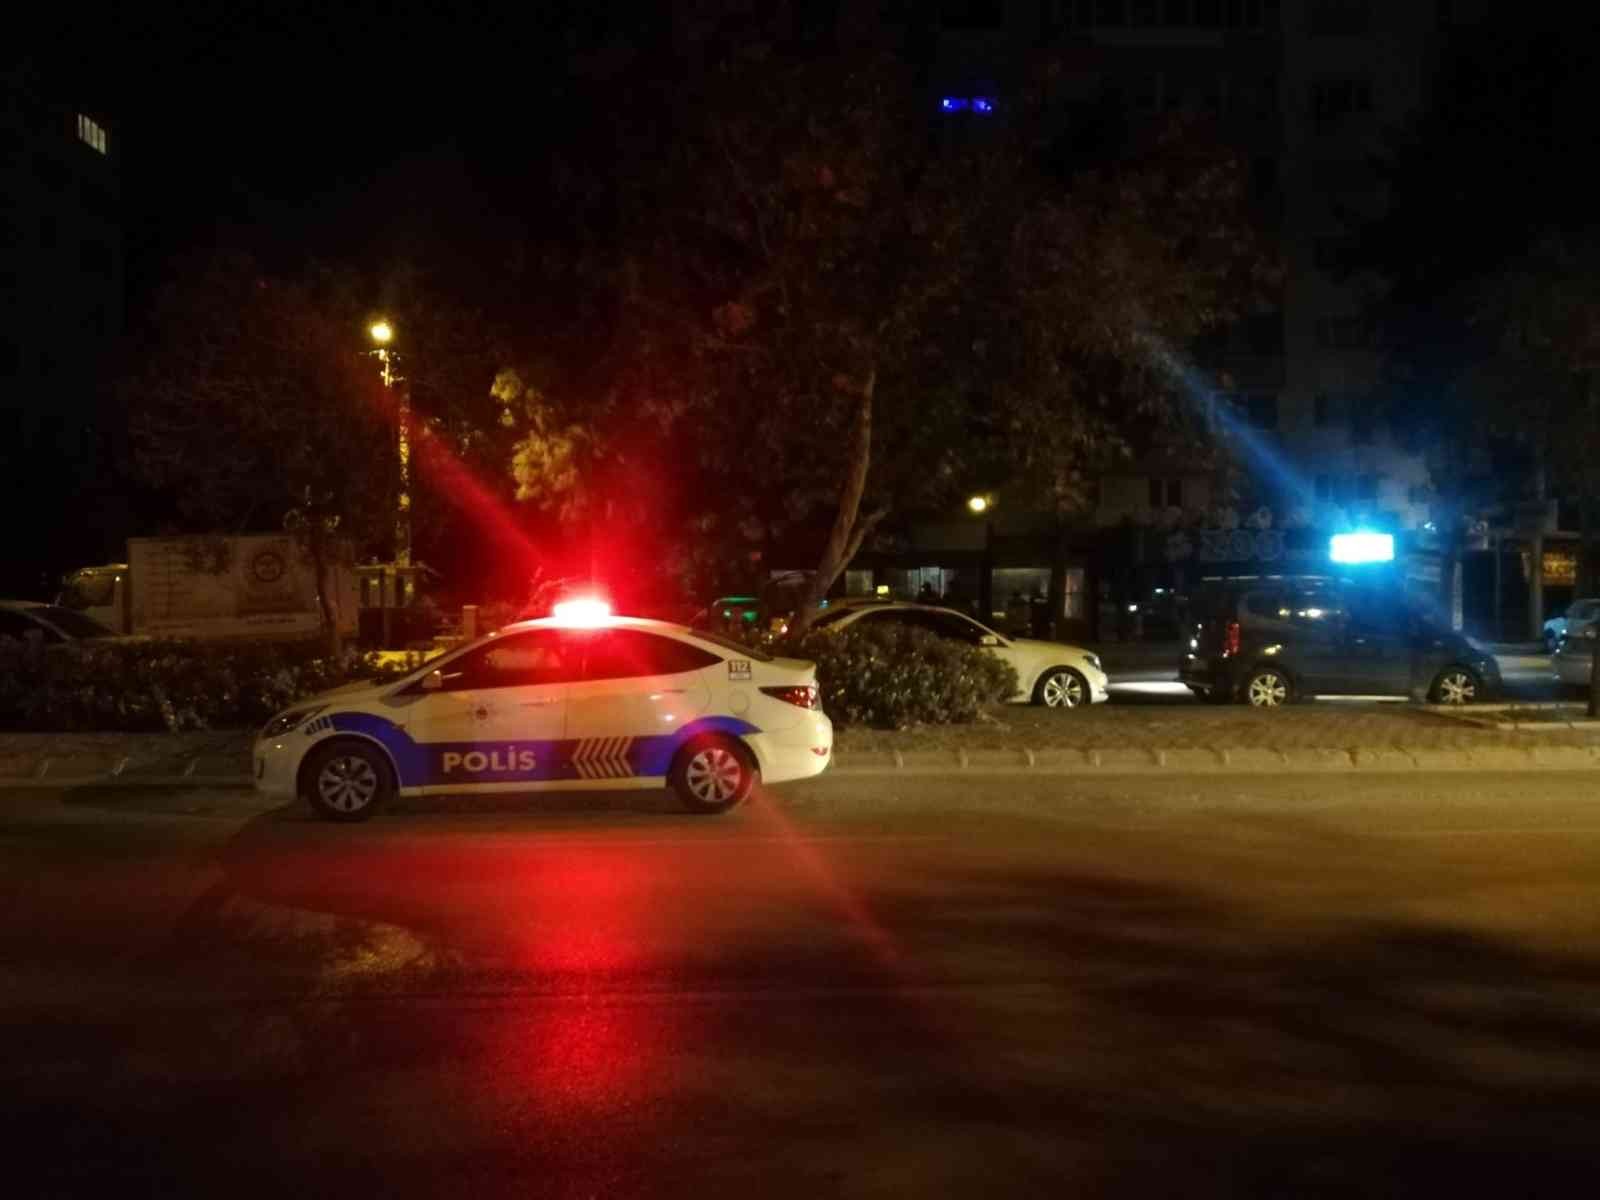 İzmir’de bir kişinin öldüğü silahlı saldırıyla ilgili 6 tutuklama #izmir